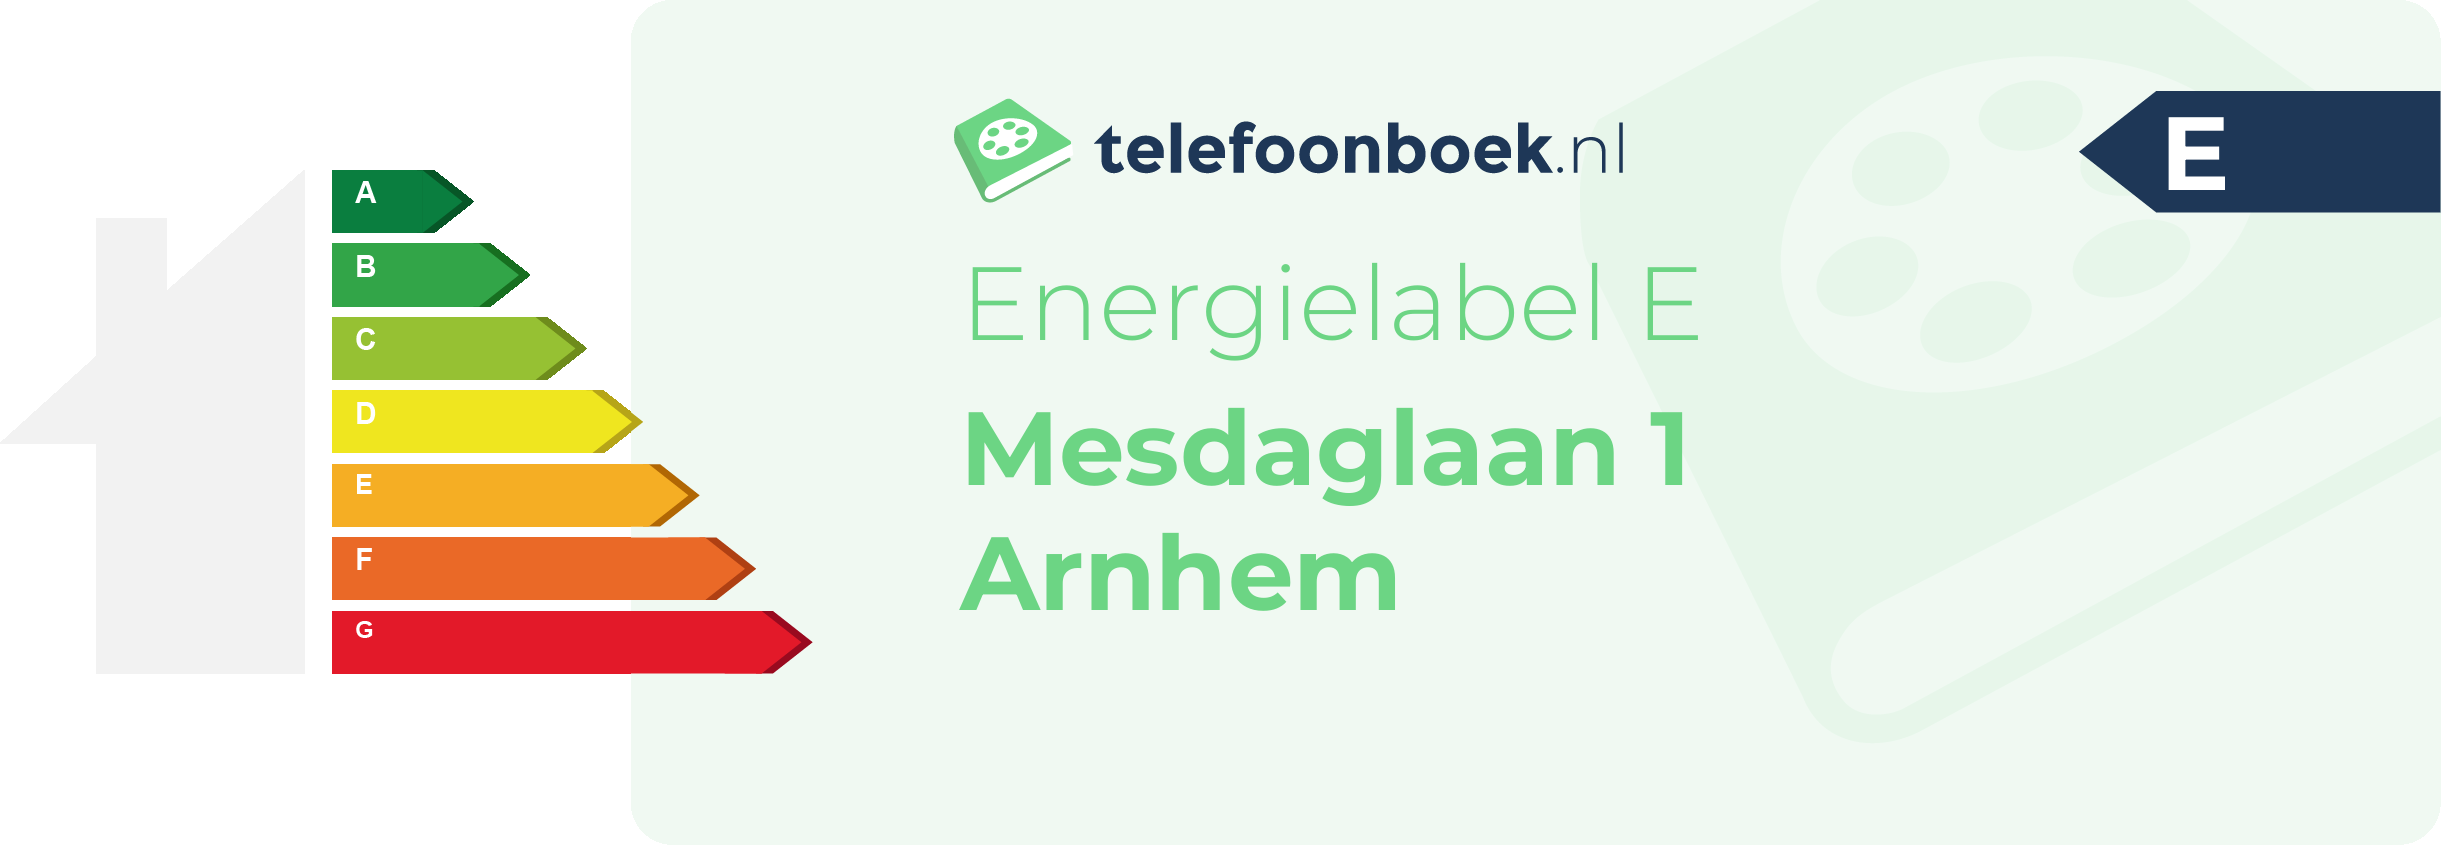 Energielabel Mesdaglaan 1 Arnhem